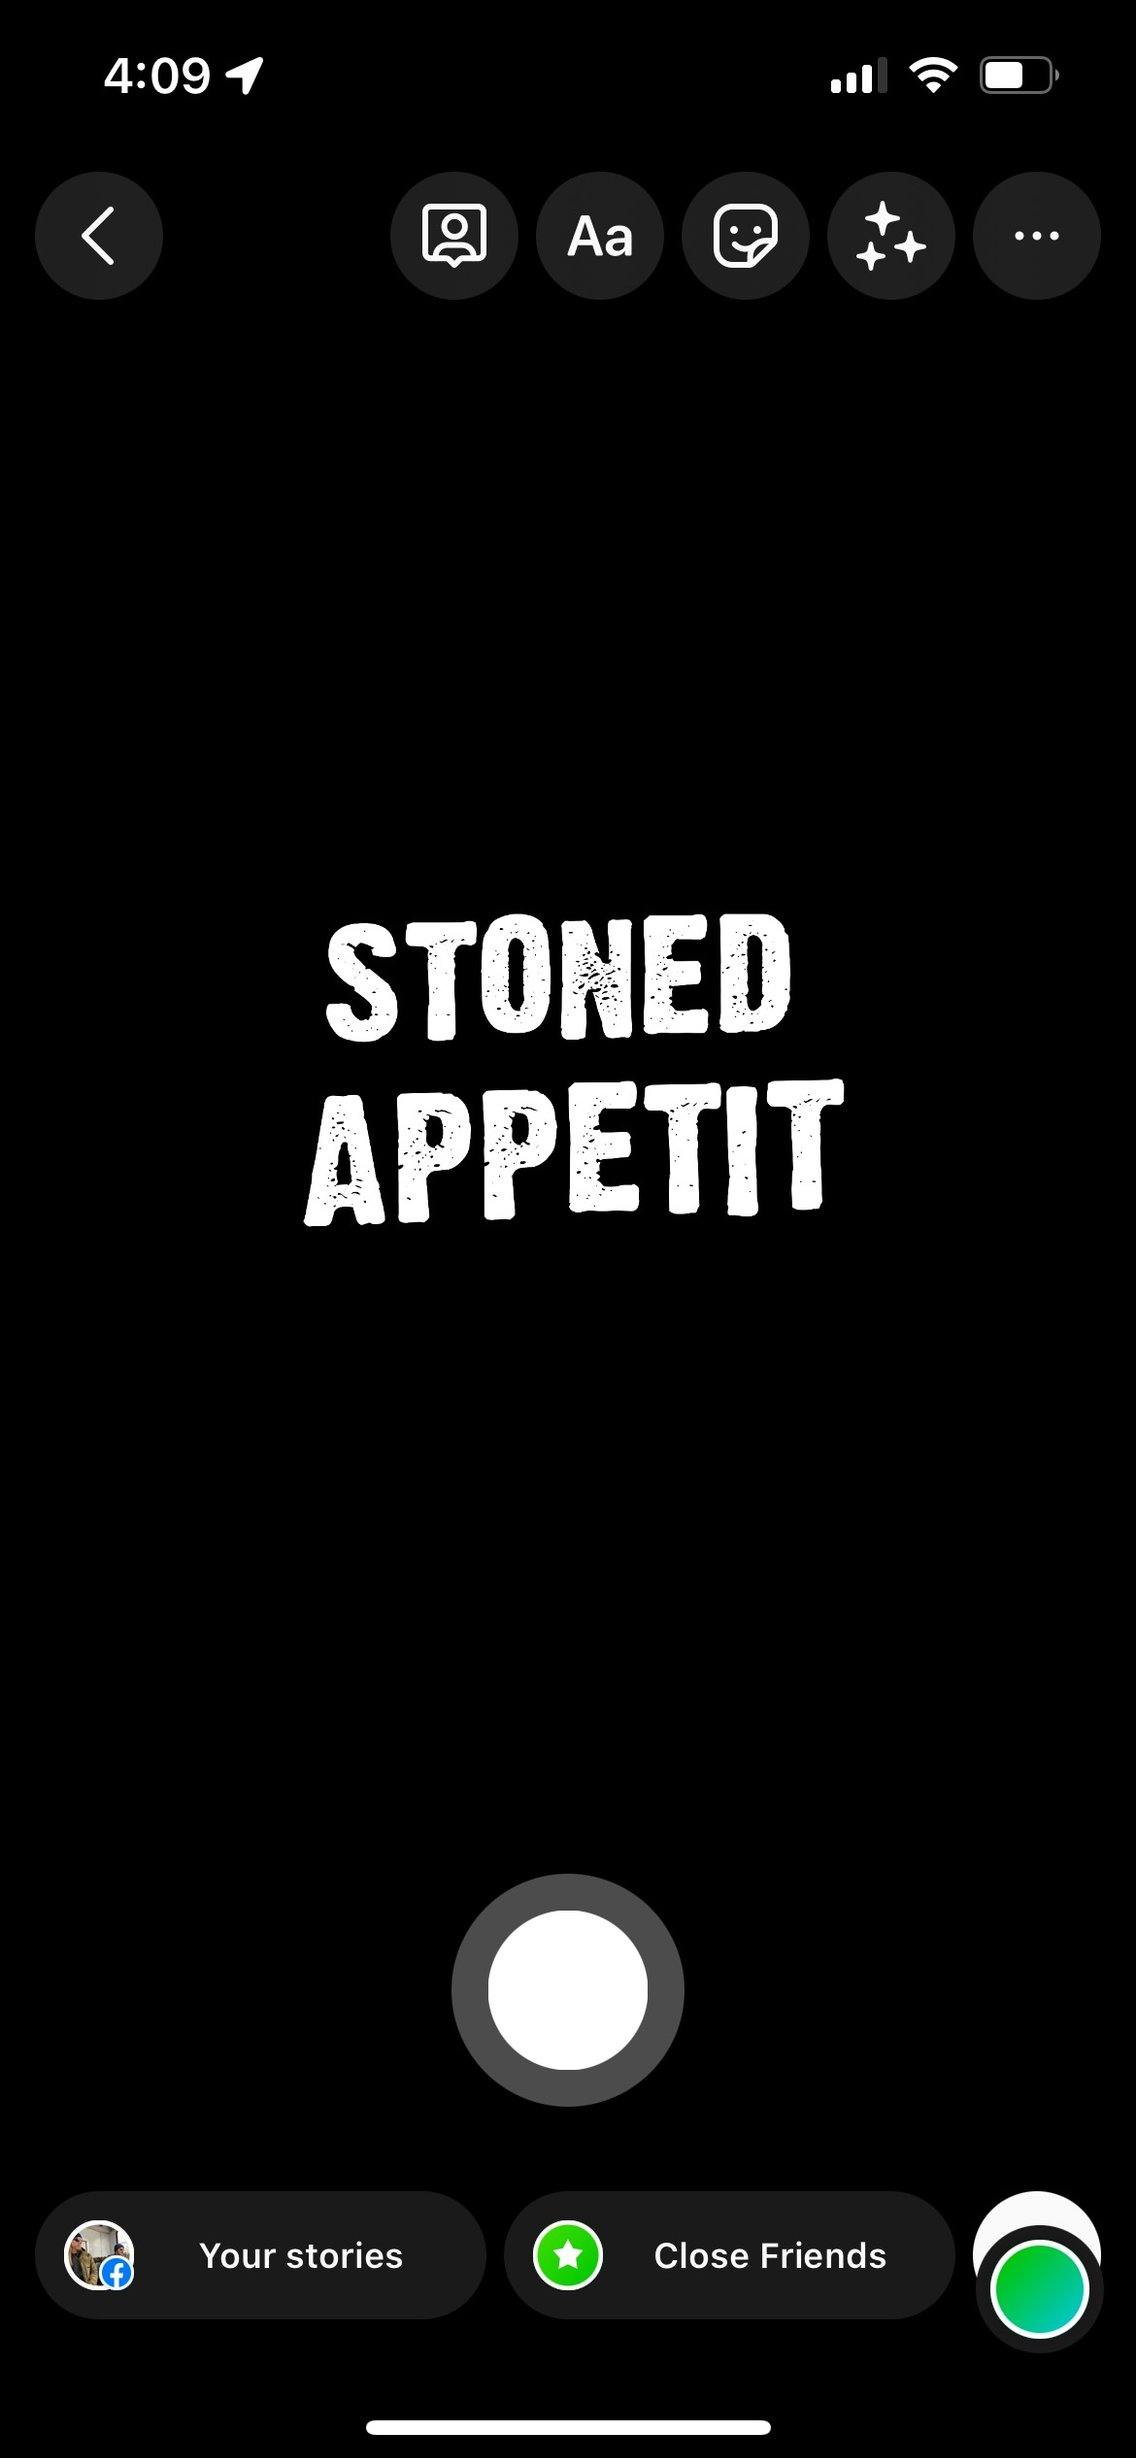 Stoned Appetit - immagine di copertina
